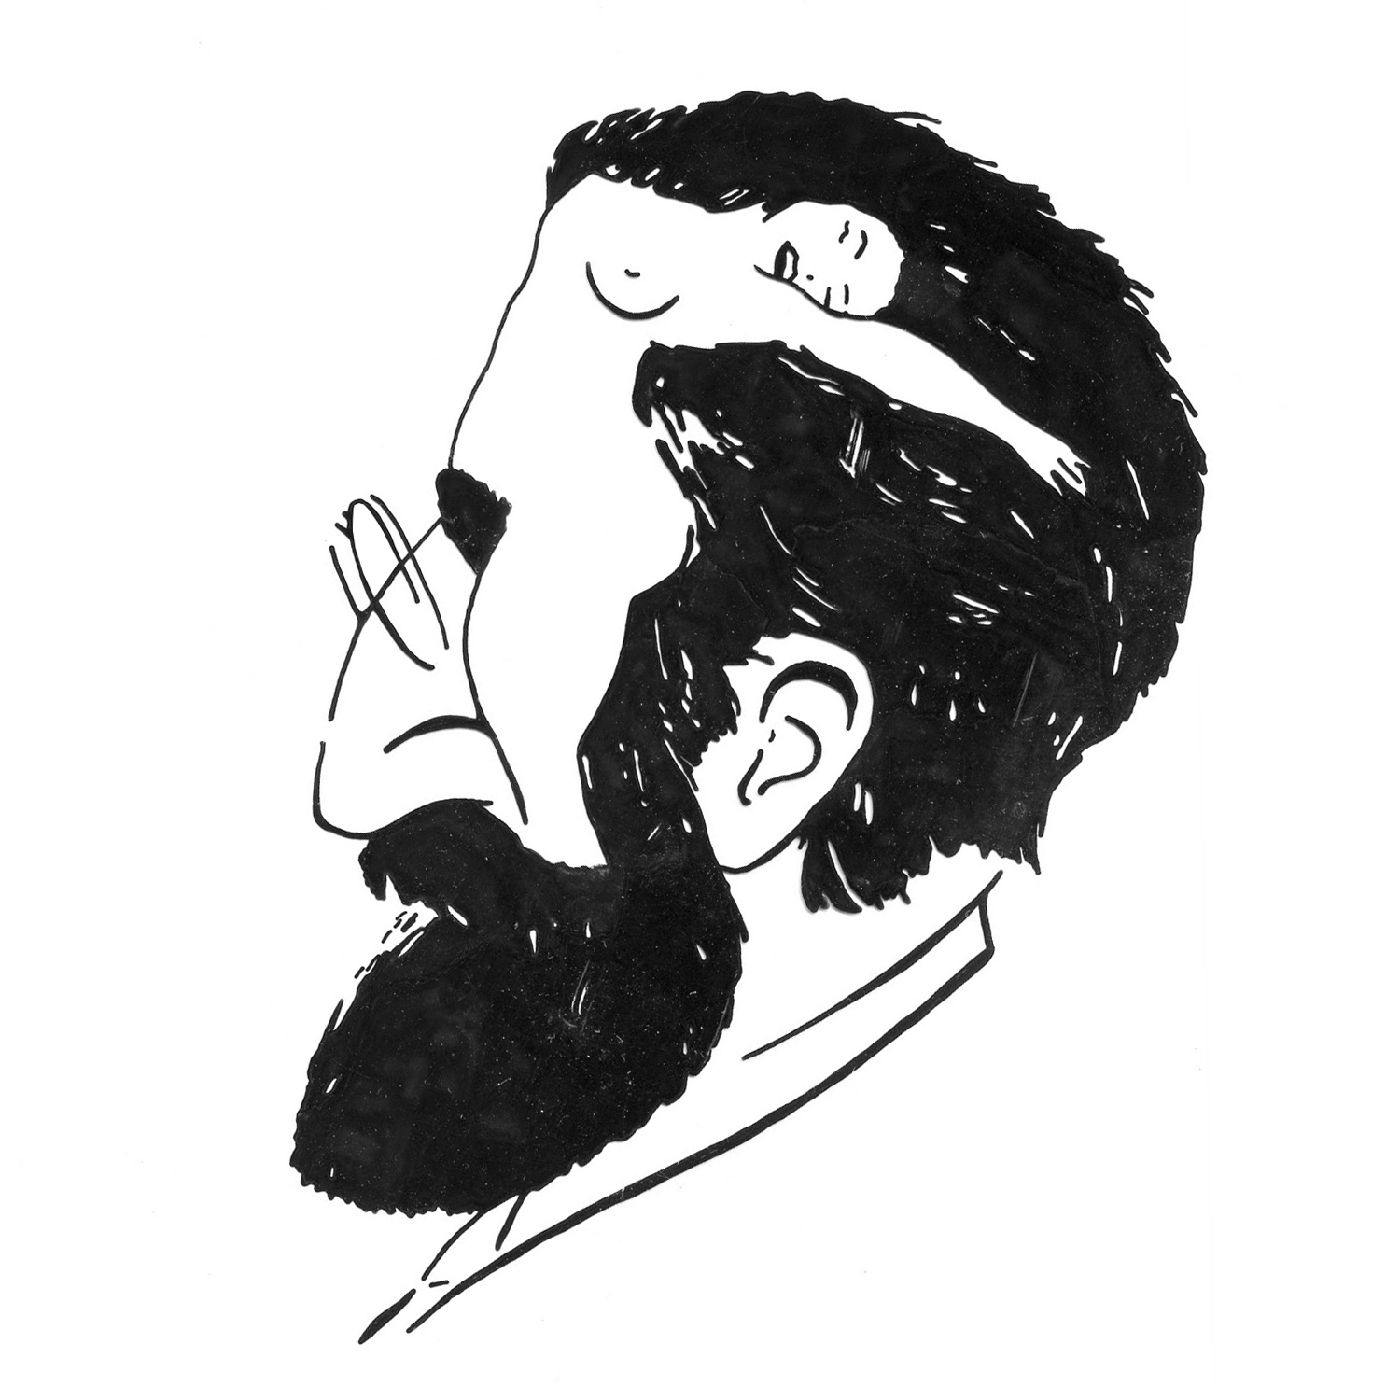 Freud d'après une caricature anonyme du milieu des années 70